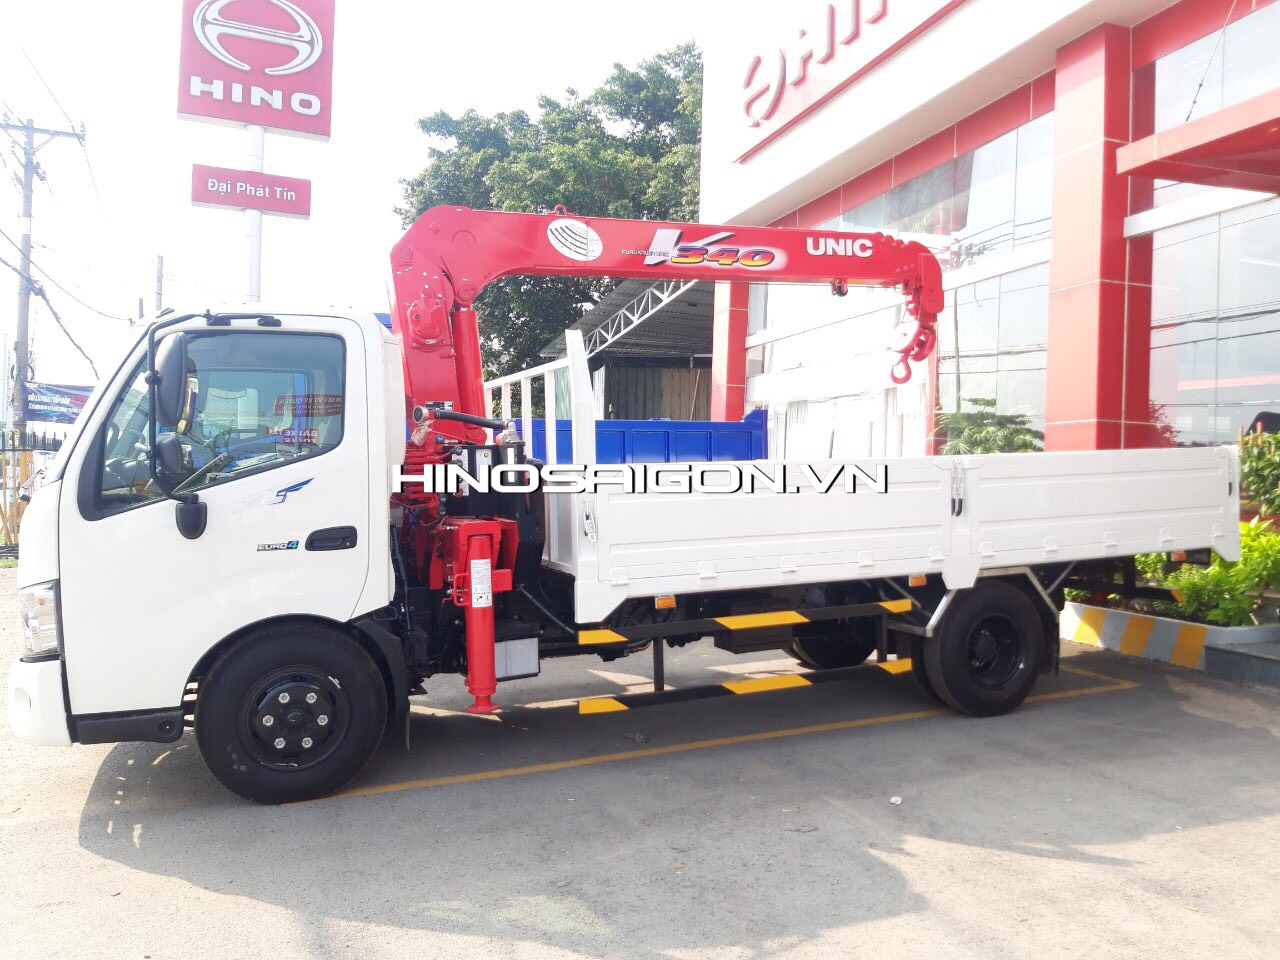 Hinosaigon.vn - Cập nhật các dòng xe tải hino 3.5 tấn gắn cẩu và ép rác có sẵn